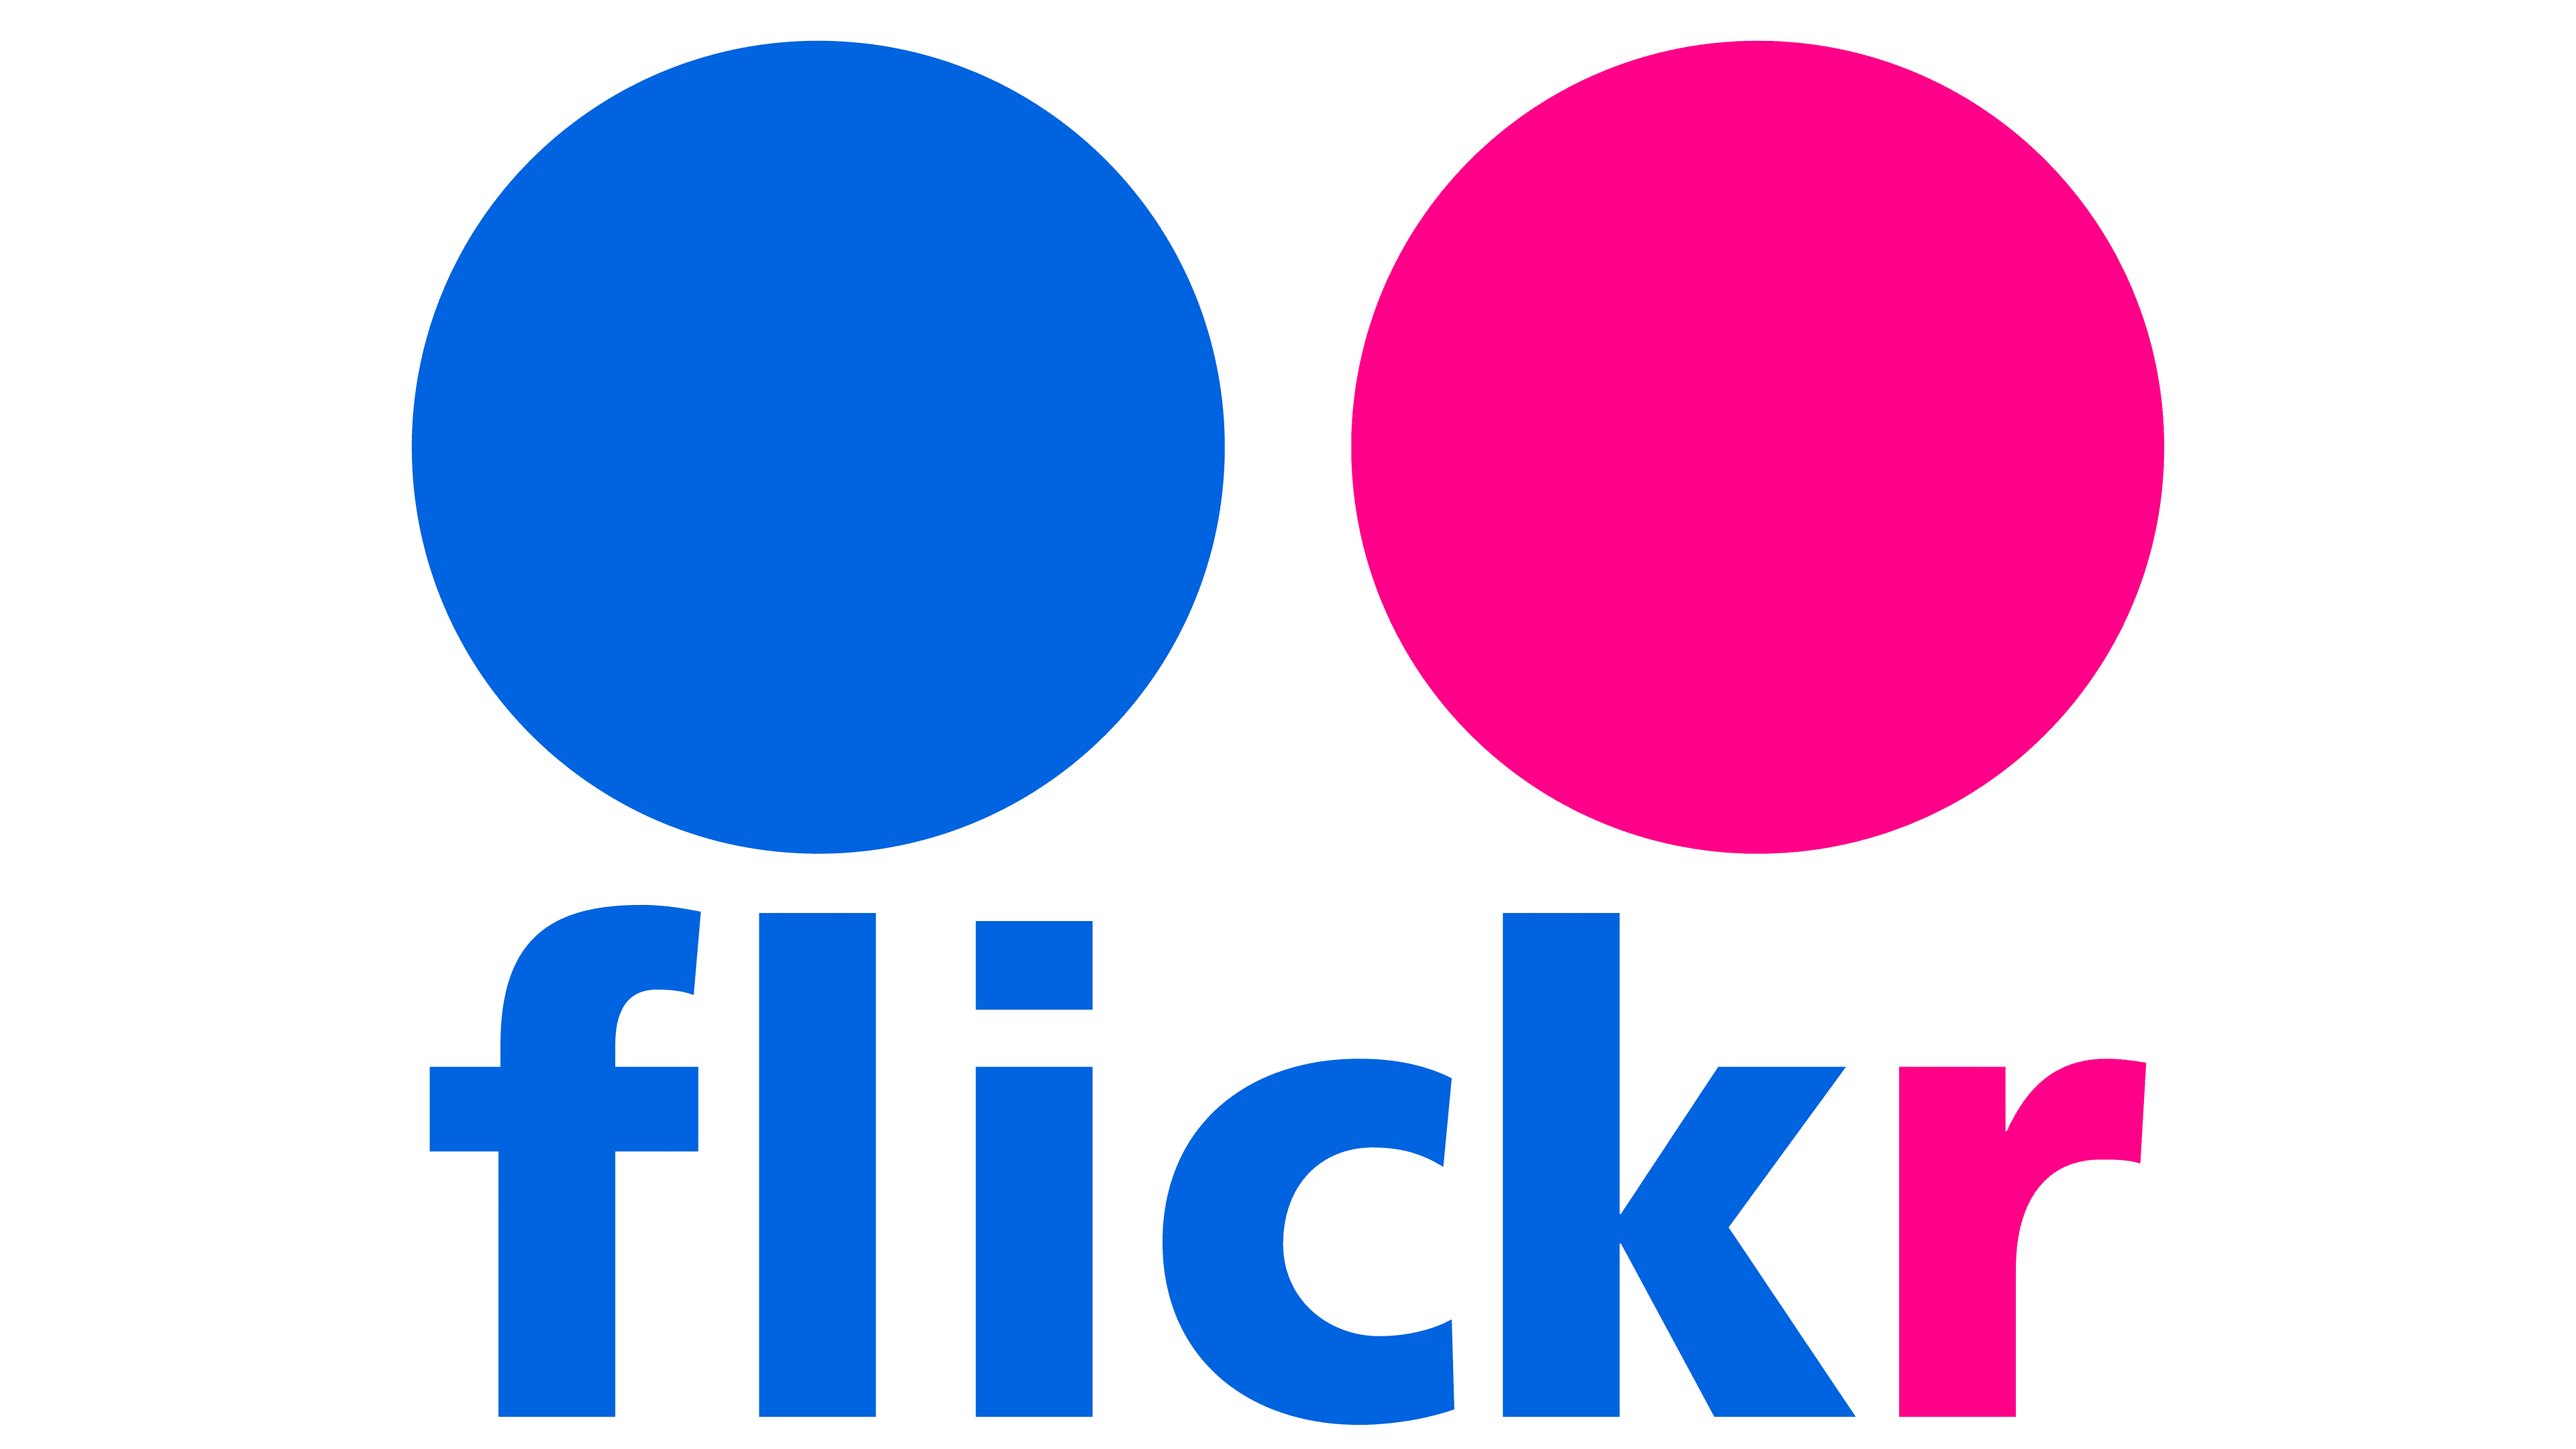 Flickr Logo - Logo, zeichen, emblem, symbol. Geschichte und Bedeutung